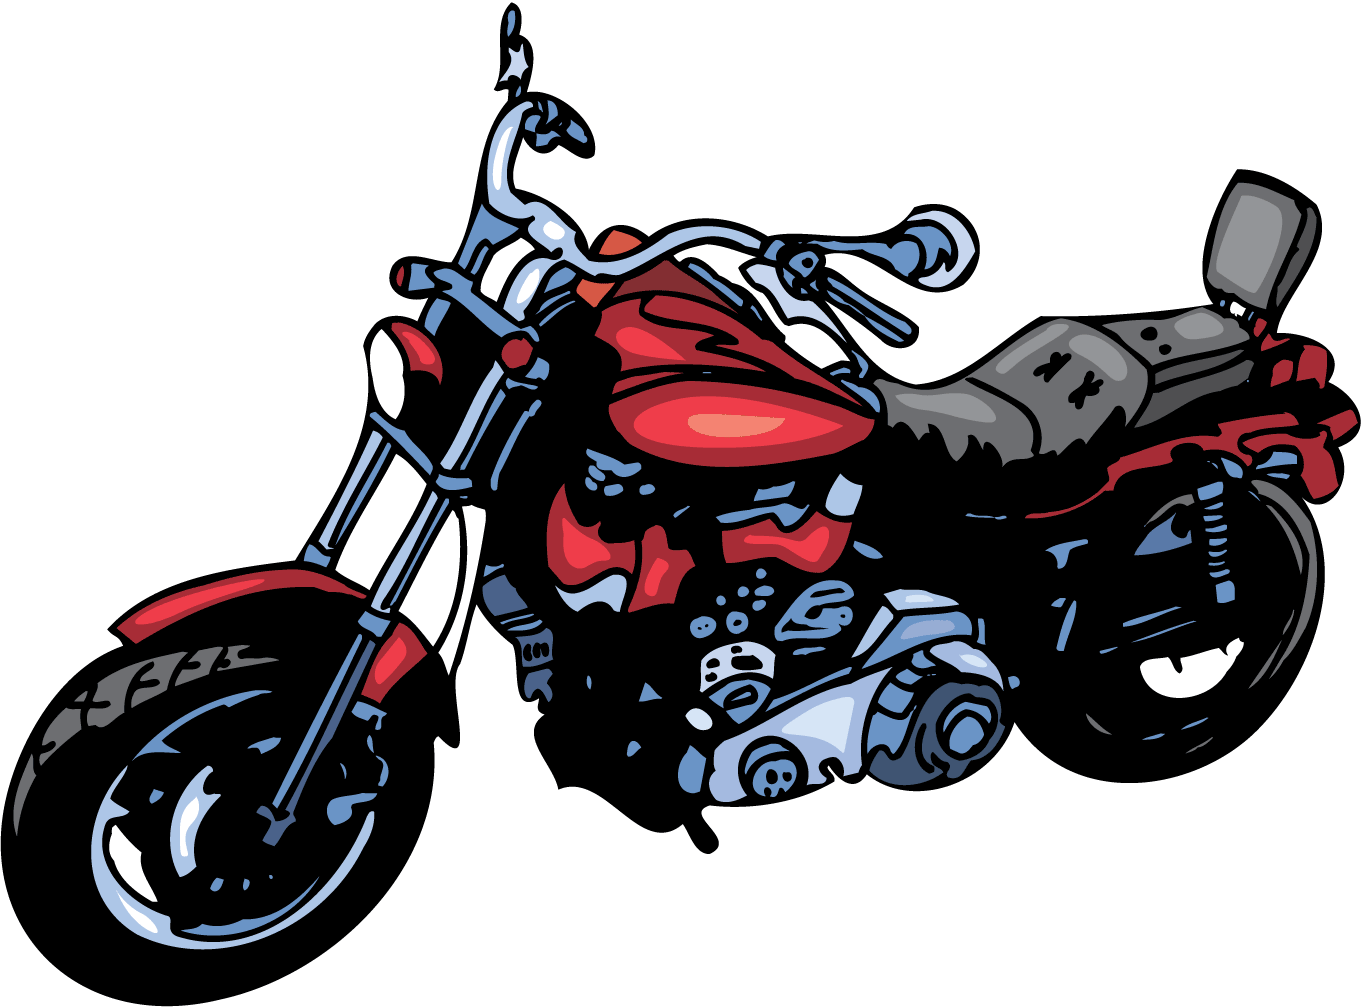 hero-motocorp-250cc-cruiser-bike